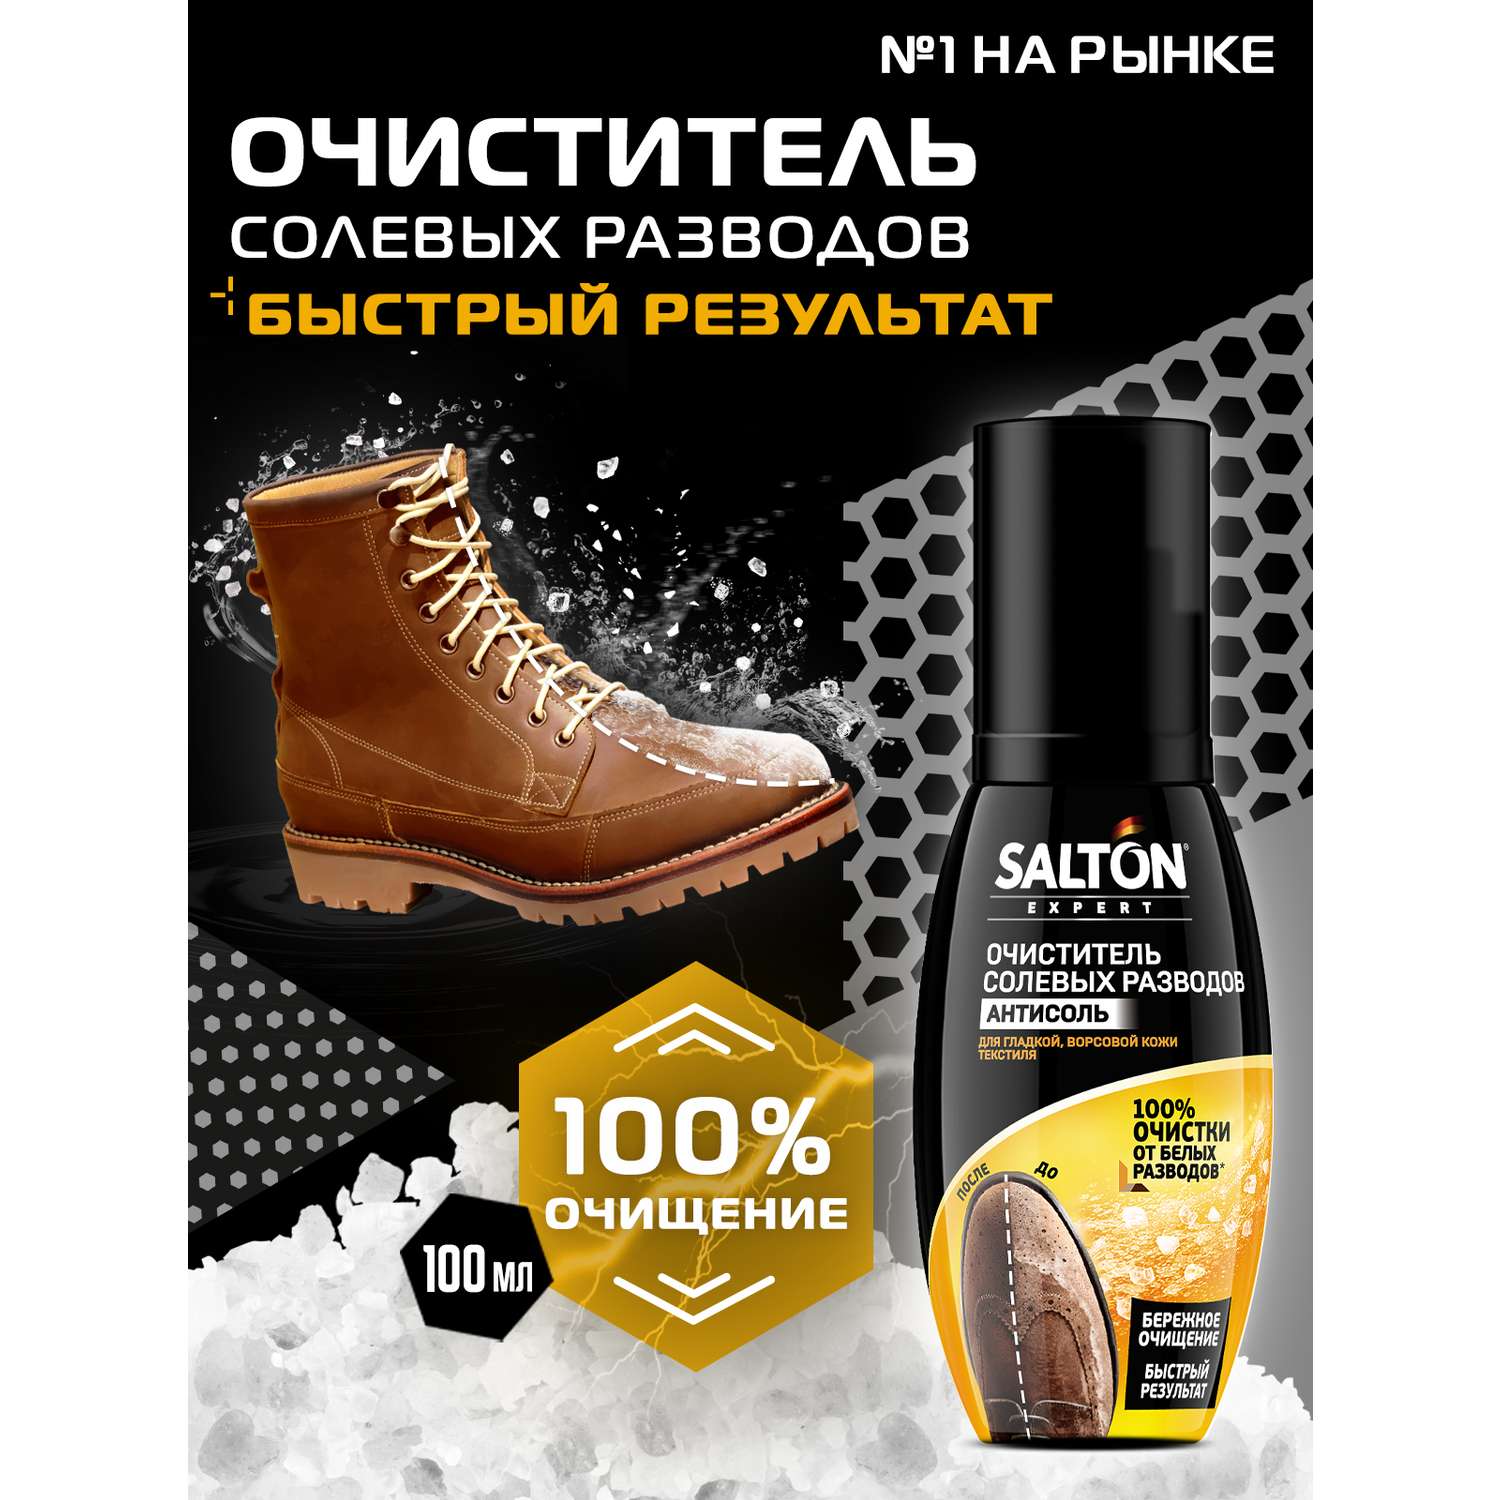 Expert Антисоль Salton очиститель разводов для обуви от соли и реагентов 100мл - фото 4